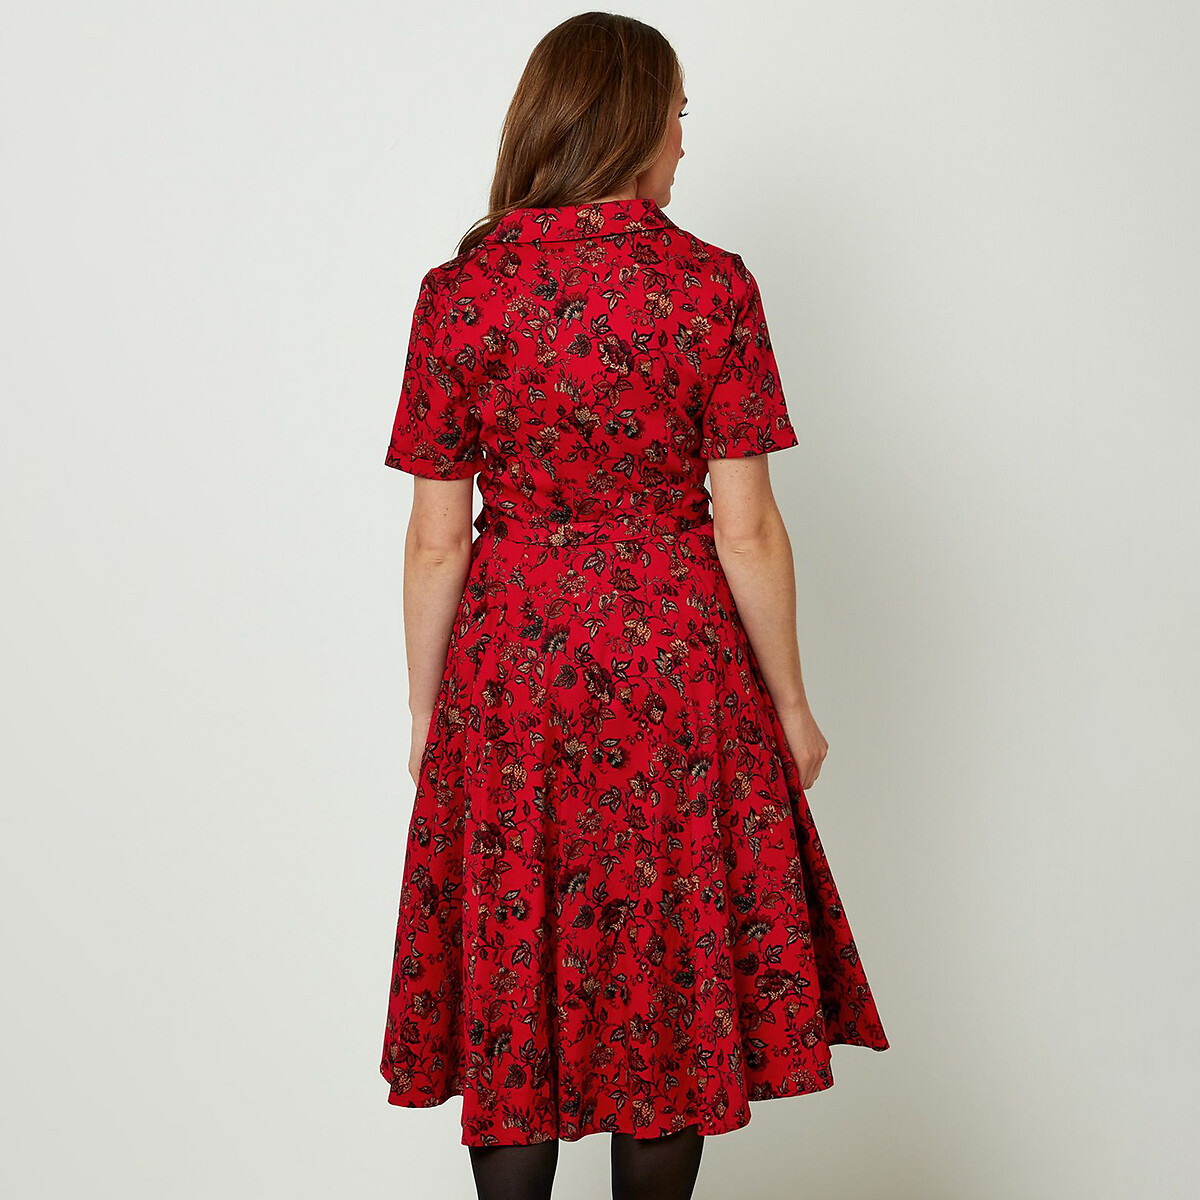 Платье La Redoute Расклешенное с цветочным рисунком рубашечный воротник на пуговицах 40 (FR) - 46 (RUS) красный, размер 40 (FR) - 46 (RUS) Расклешенное с цветочным рисунком рубашечный воротник на пуговицах 40 (FR) - 46 (RUS) красный - фото 2